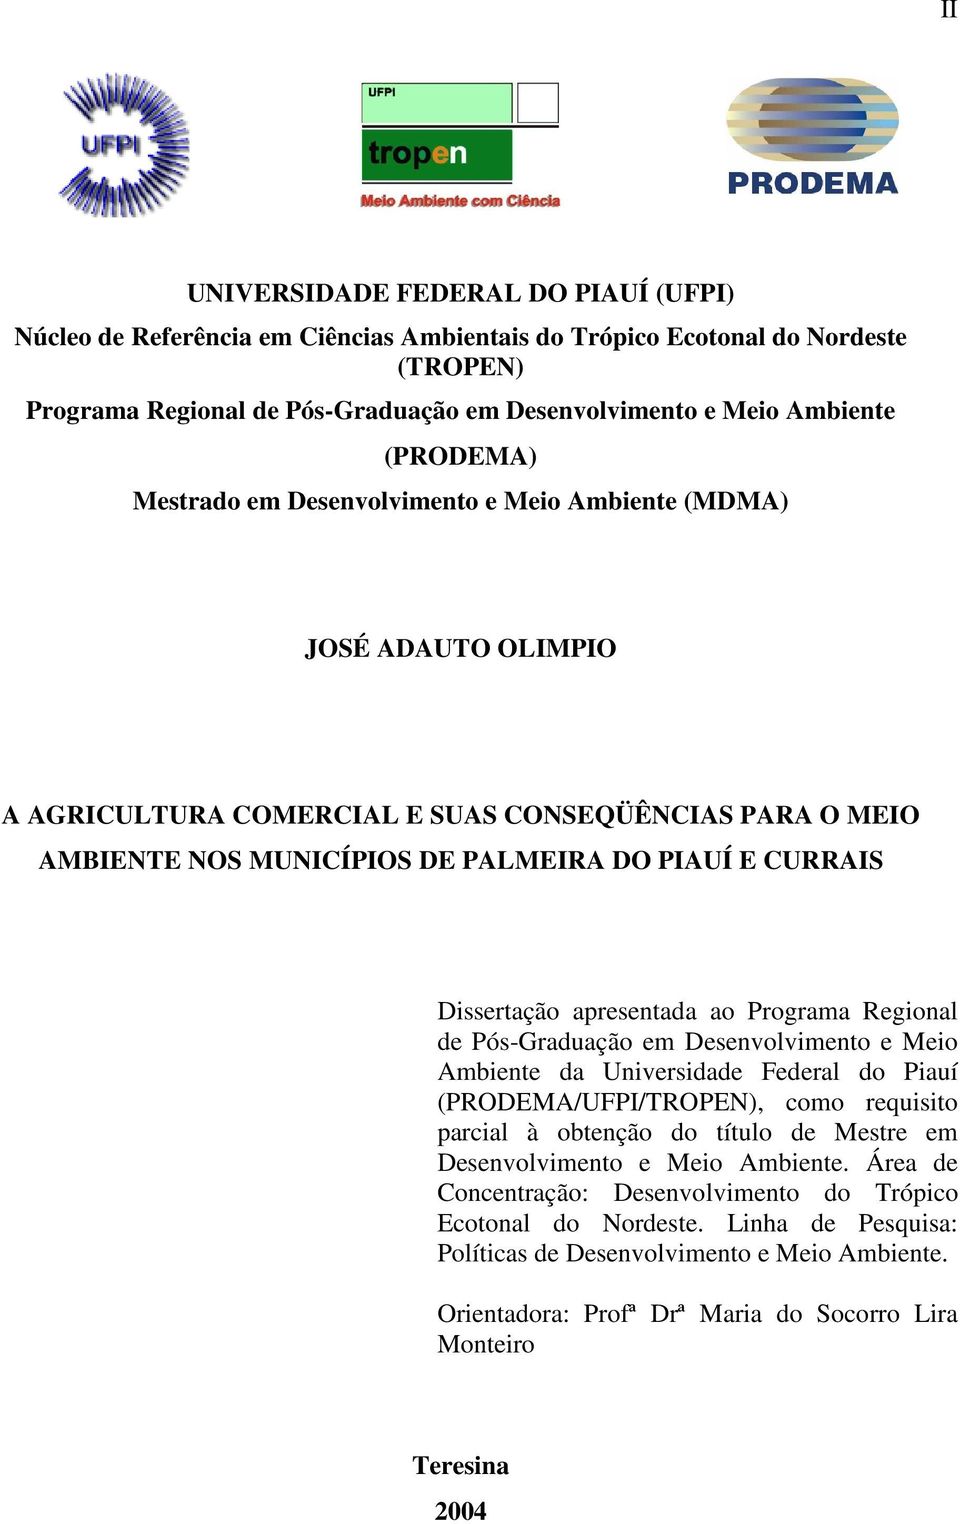 Dissertação apresentada ao Programa Regional de Pós-Graduação em Desenvolvimento e Meio Ambiente da Universidade Federal do Piauí (PRODEMA/UFPI/TROPEN), como requisito parcial à obtenção do título de